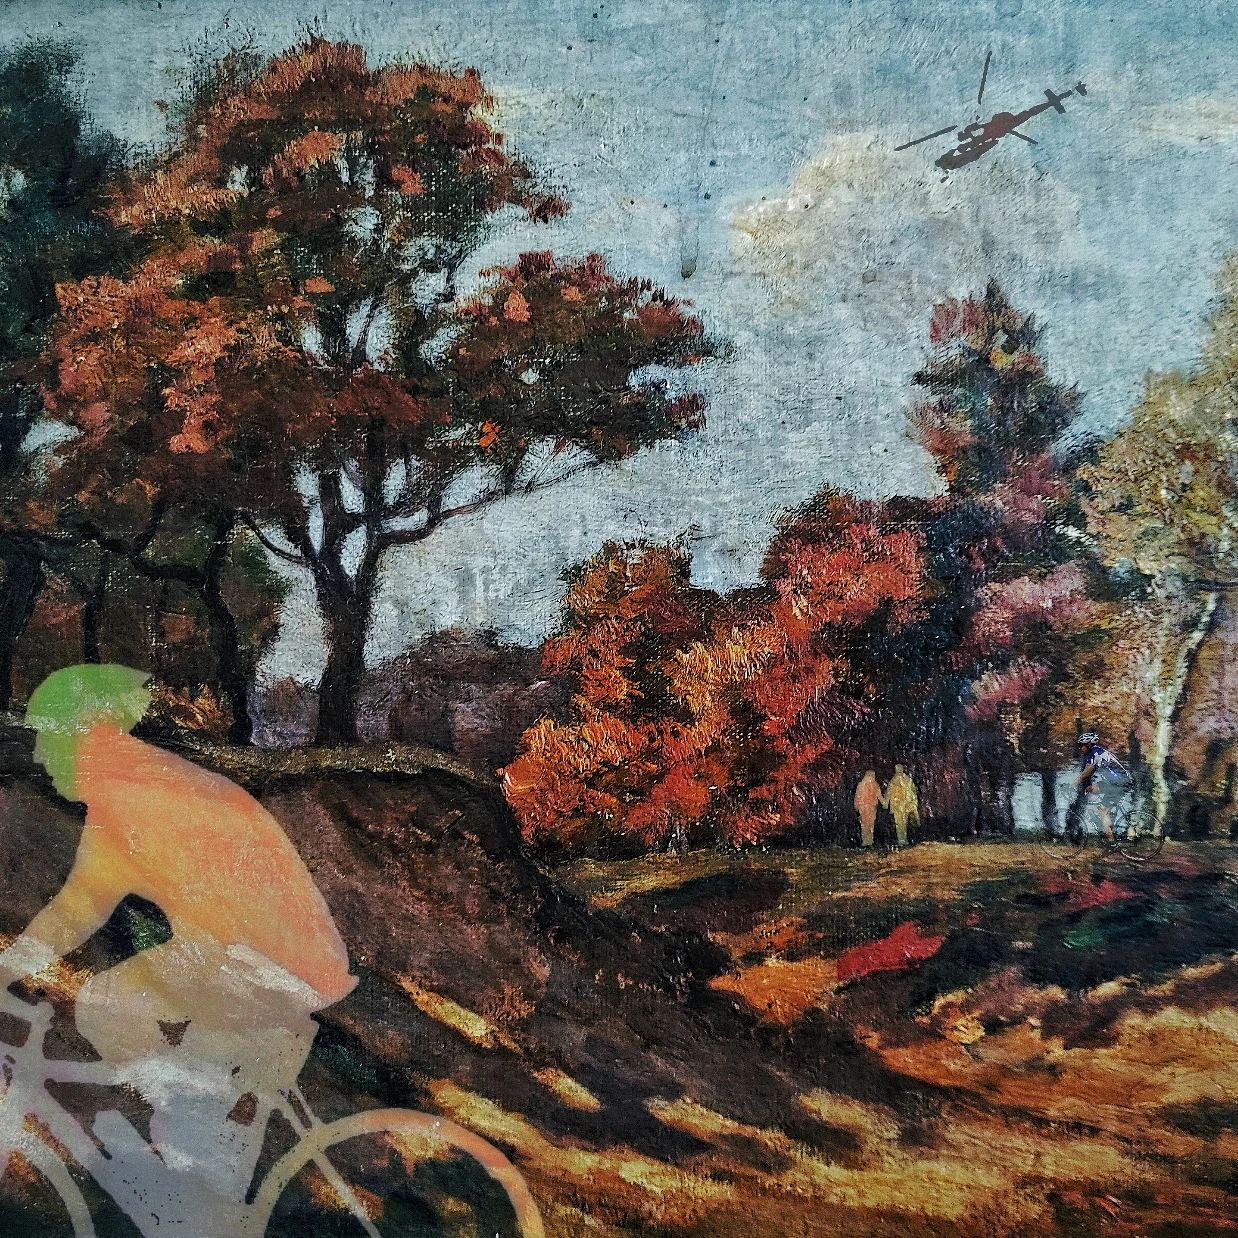 Schilderij 2.0 van een wielrenner in het bos - betaalbare kunst